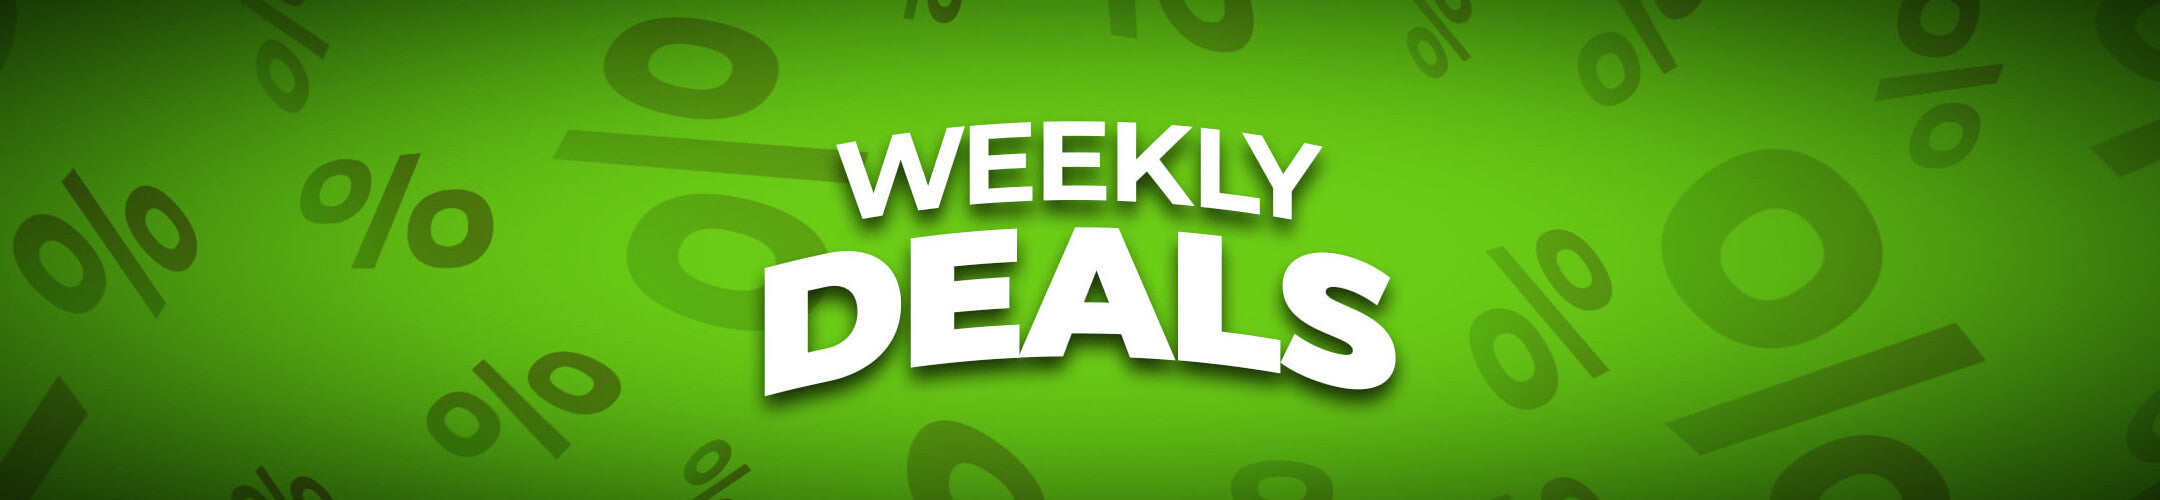 Weekly Deals auf HechtundBarsch jede Woche die besten Angebote